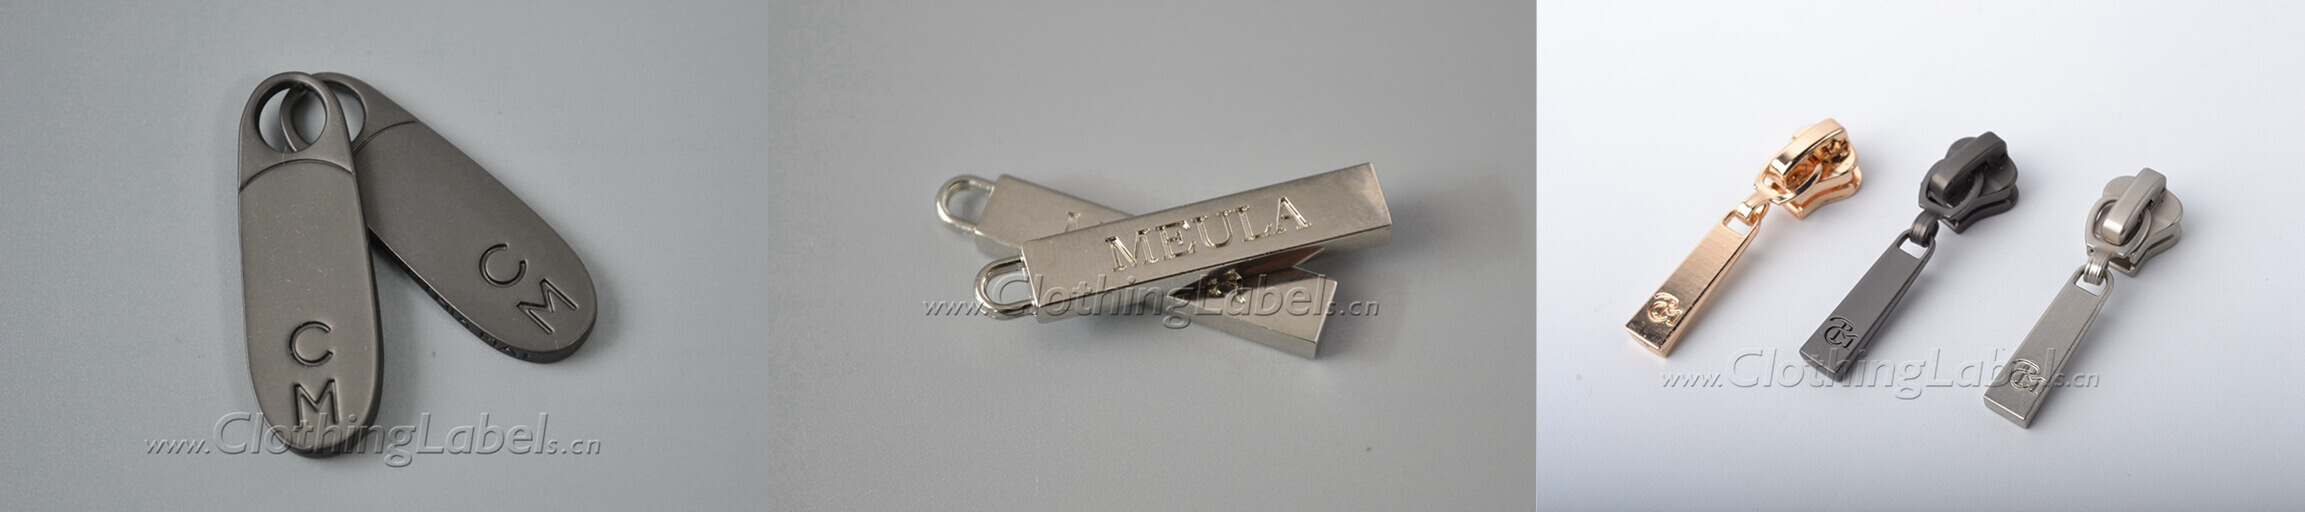 Metal zipper pulls